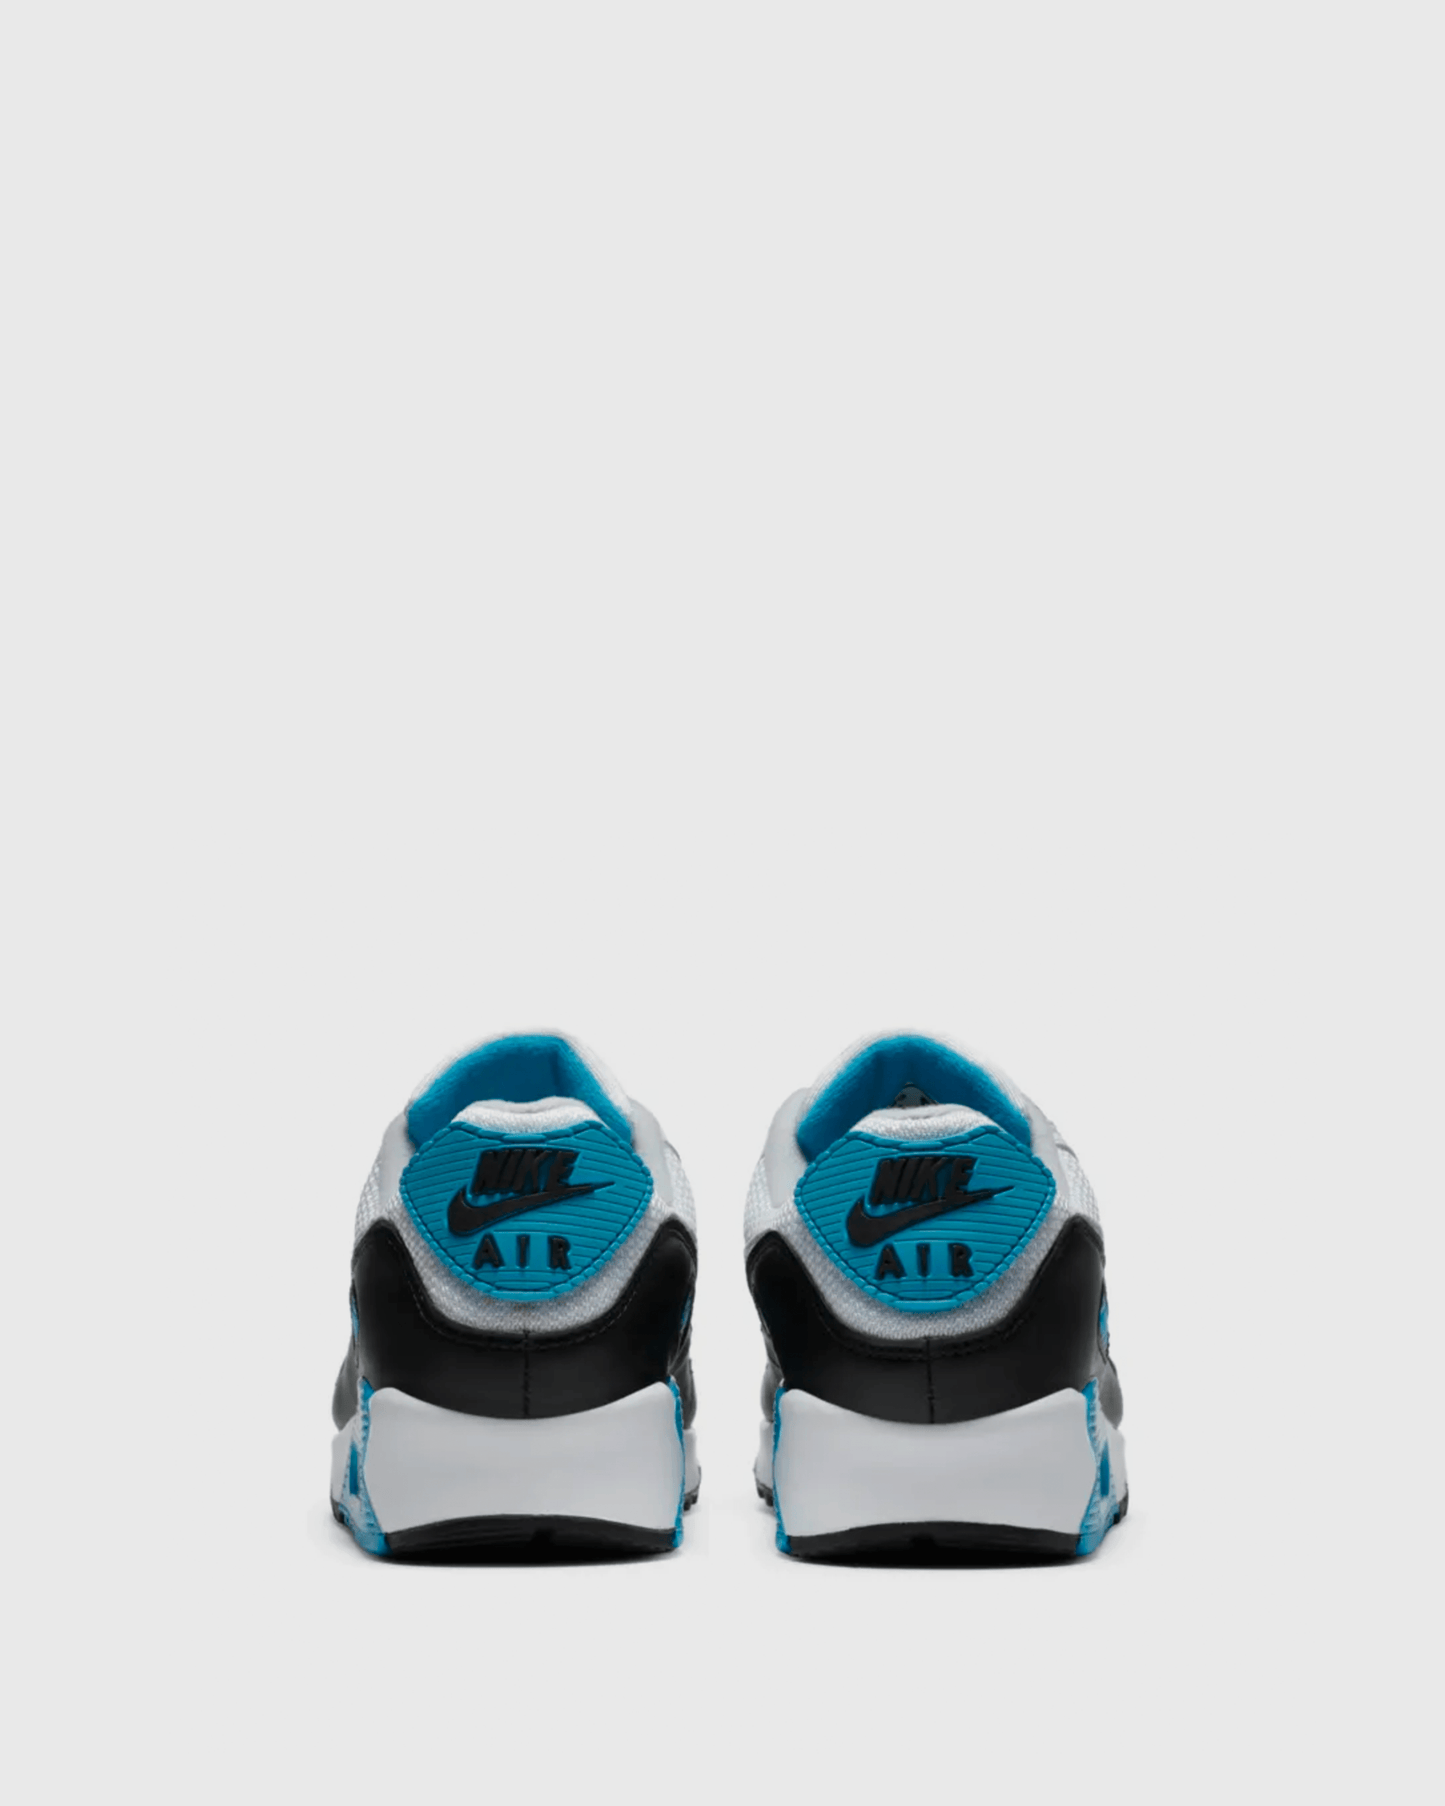 Nike Men's Sneakers Air Max III 'Laser Blue'